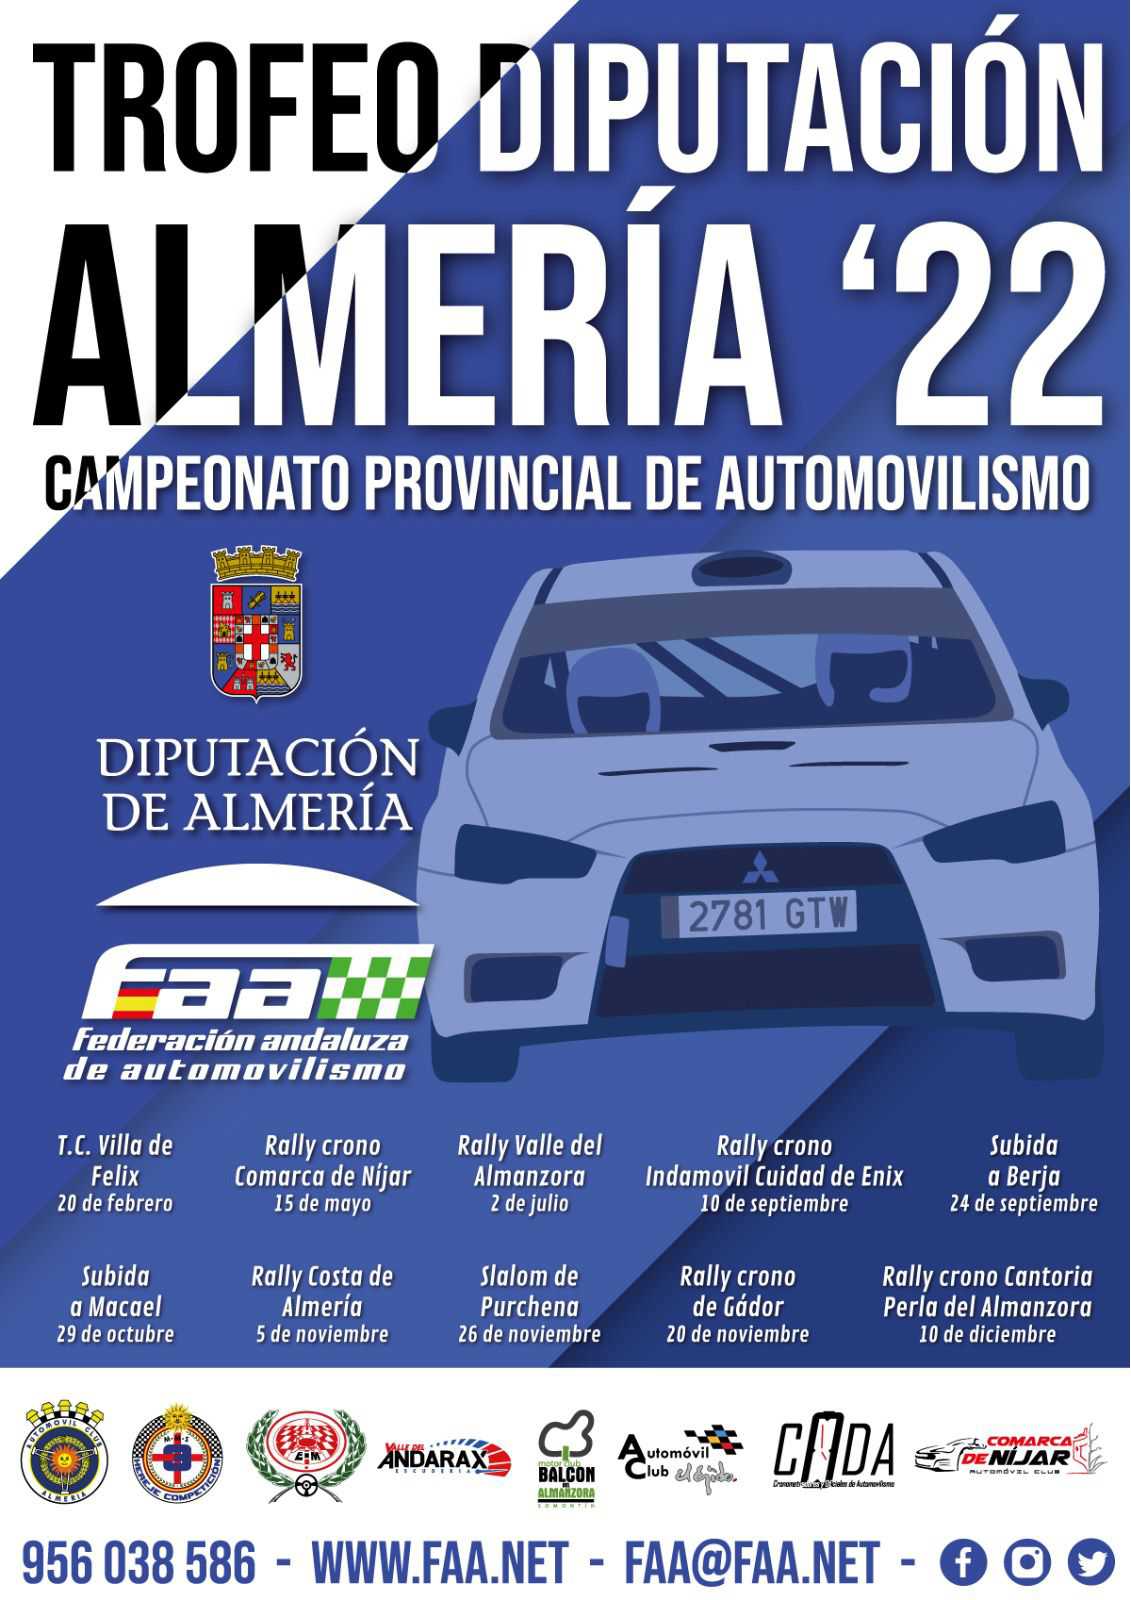 Automovilismo Trofeo Diputación Almería 2022. Slalom de Purchena 26-11-2022